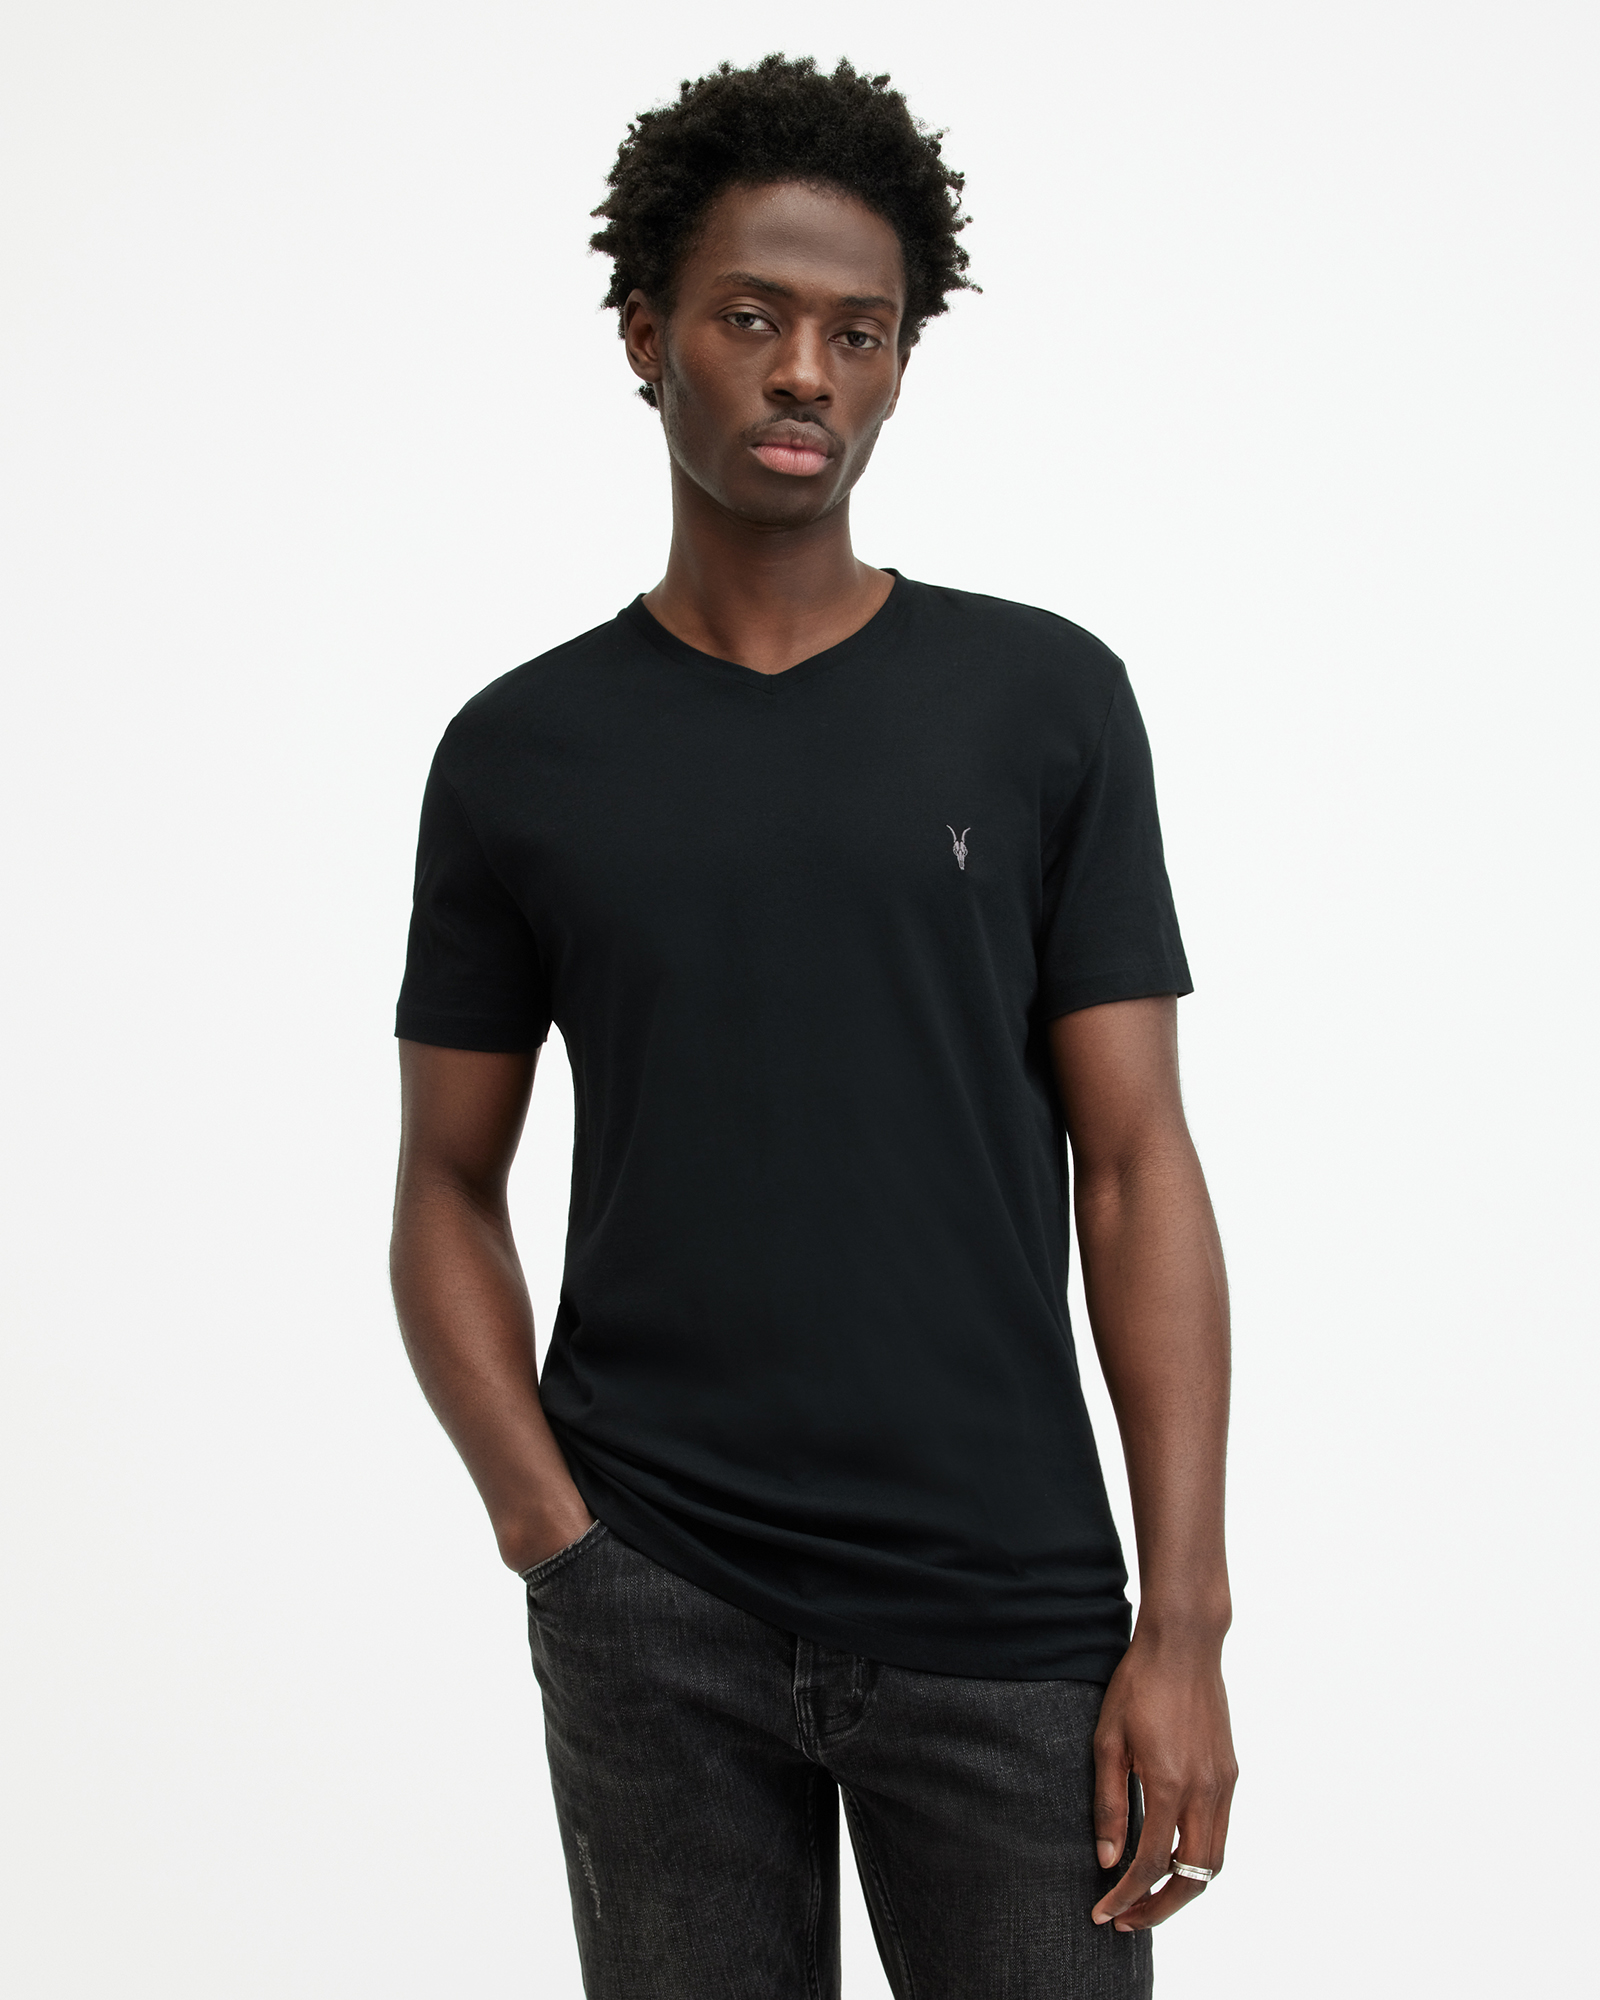 AllSaints Tonic V-Neck Slim Fit Ramskull T-Shirt,, Black